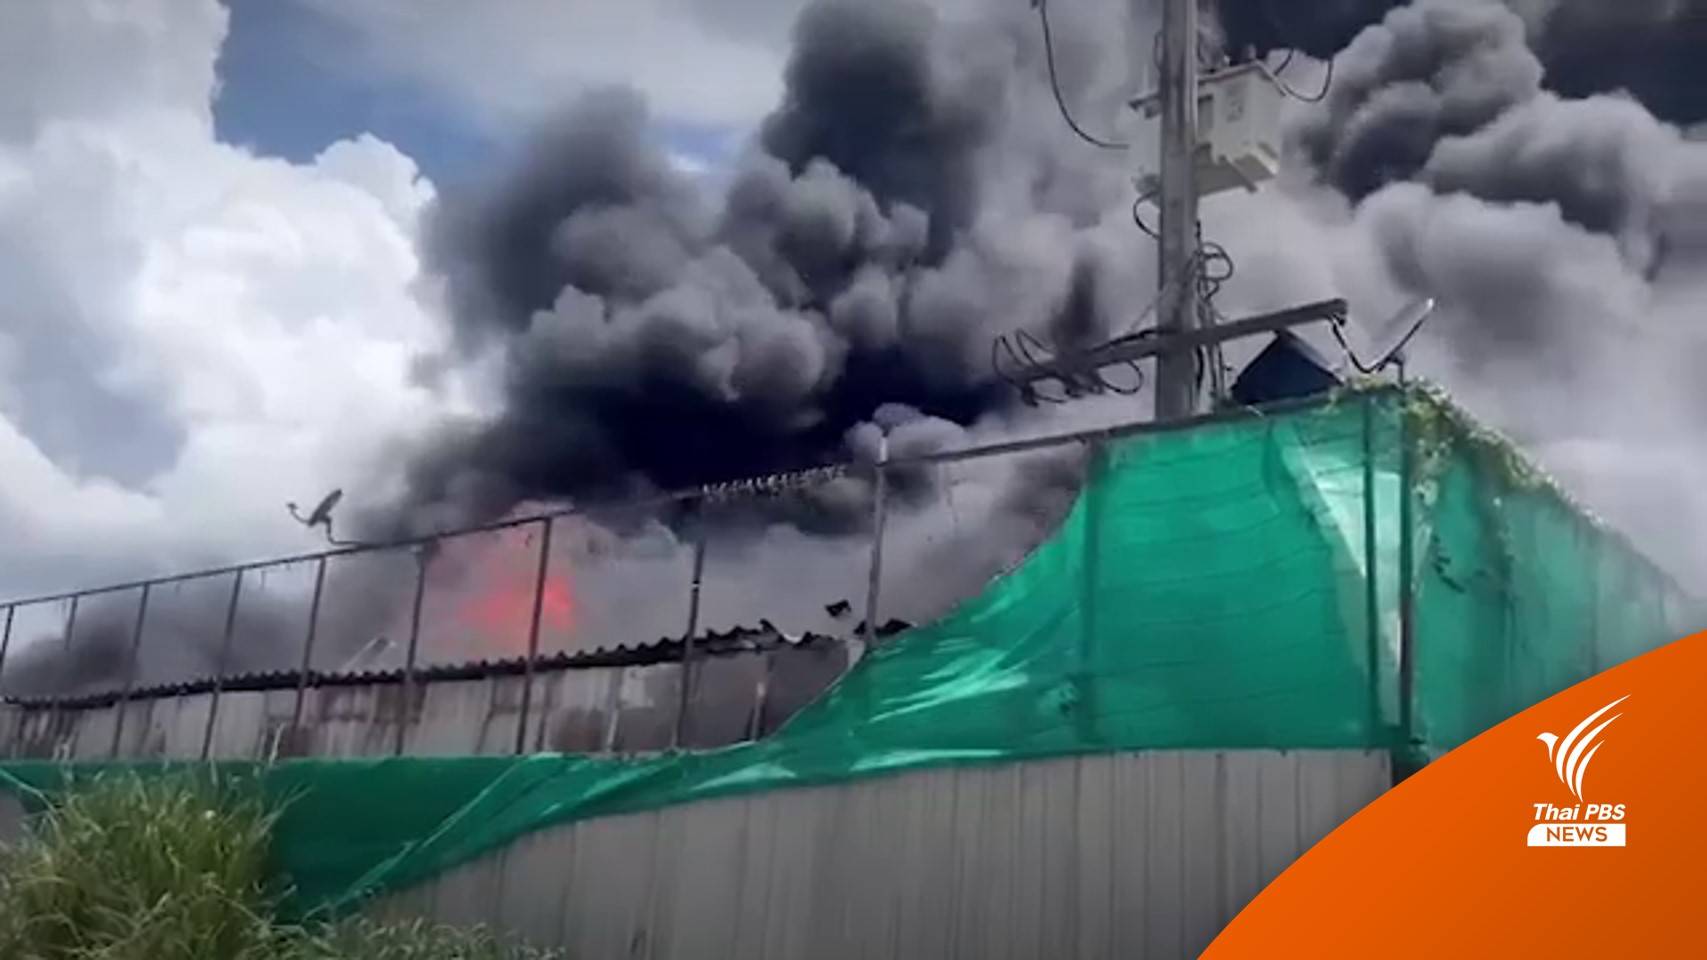 ไฟไหม้โรงงานรีไซเคิลระยอง คาดเสียหายกว่า 10 ล้านบาท